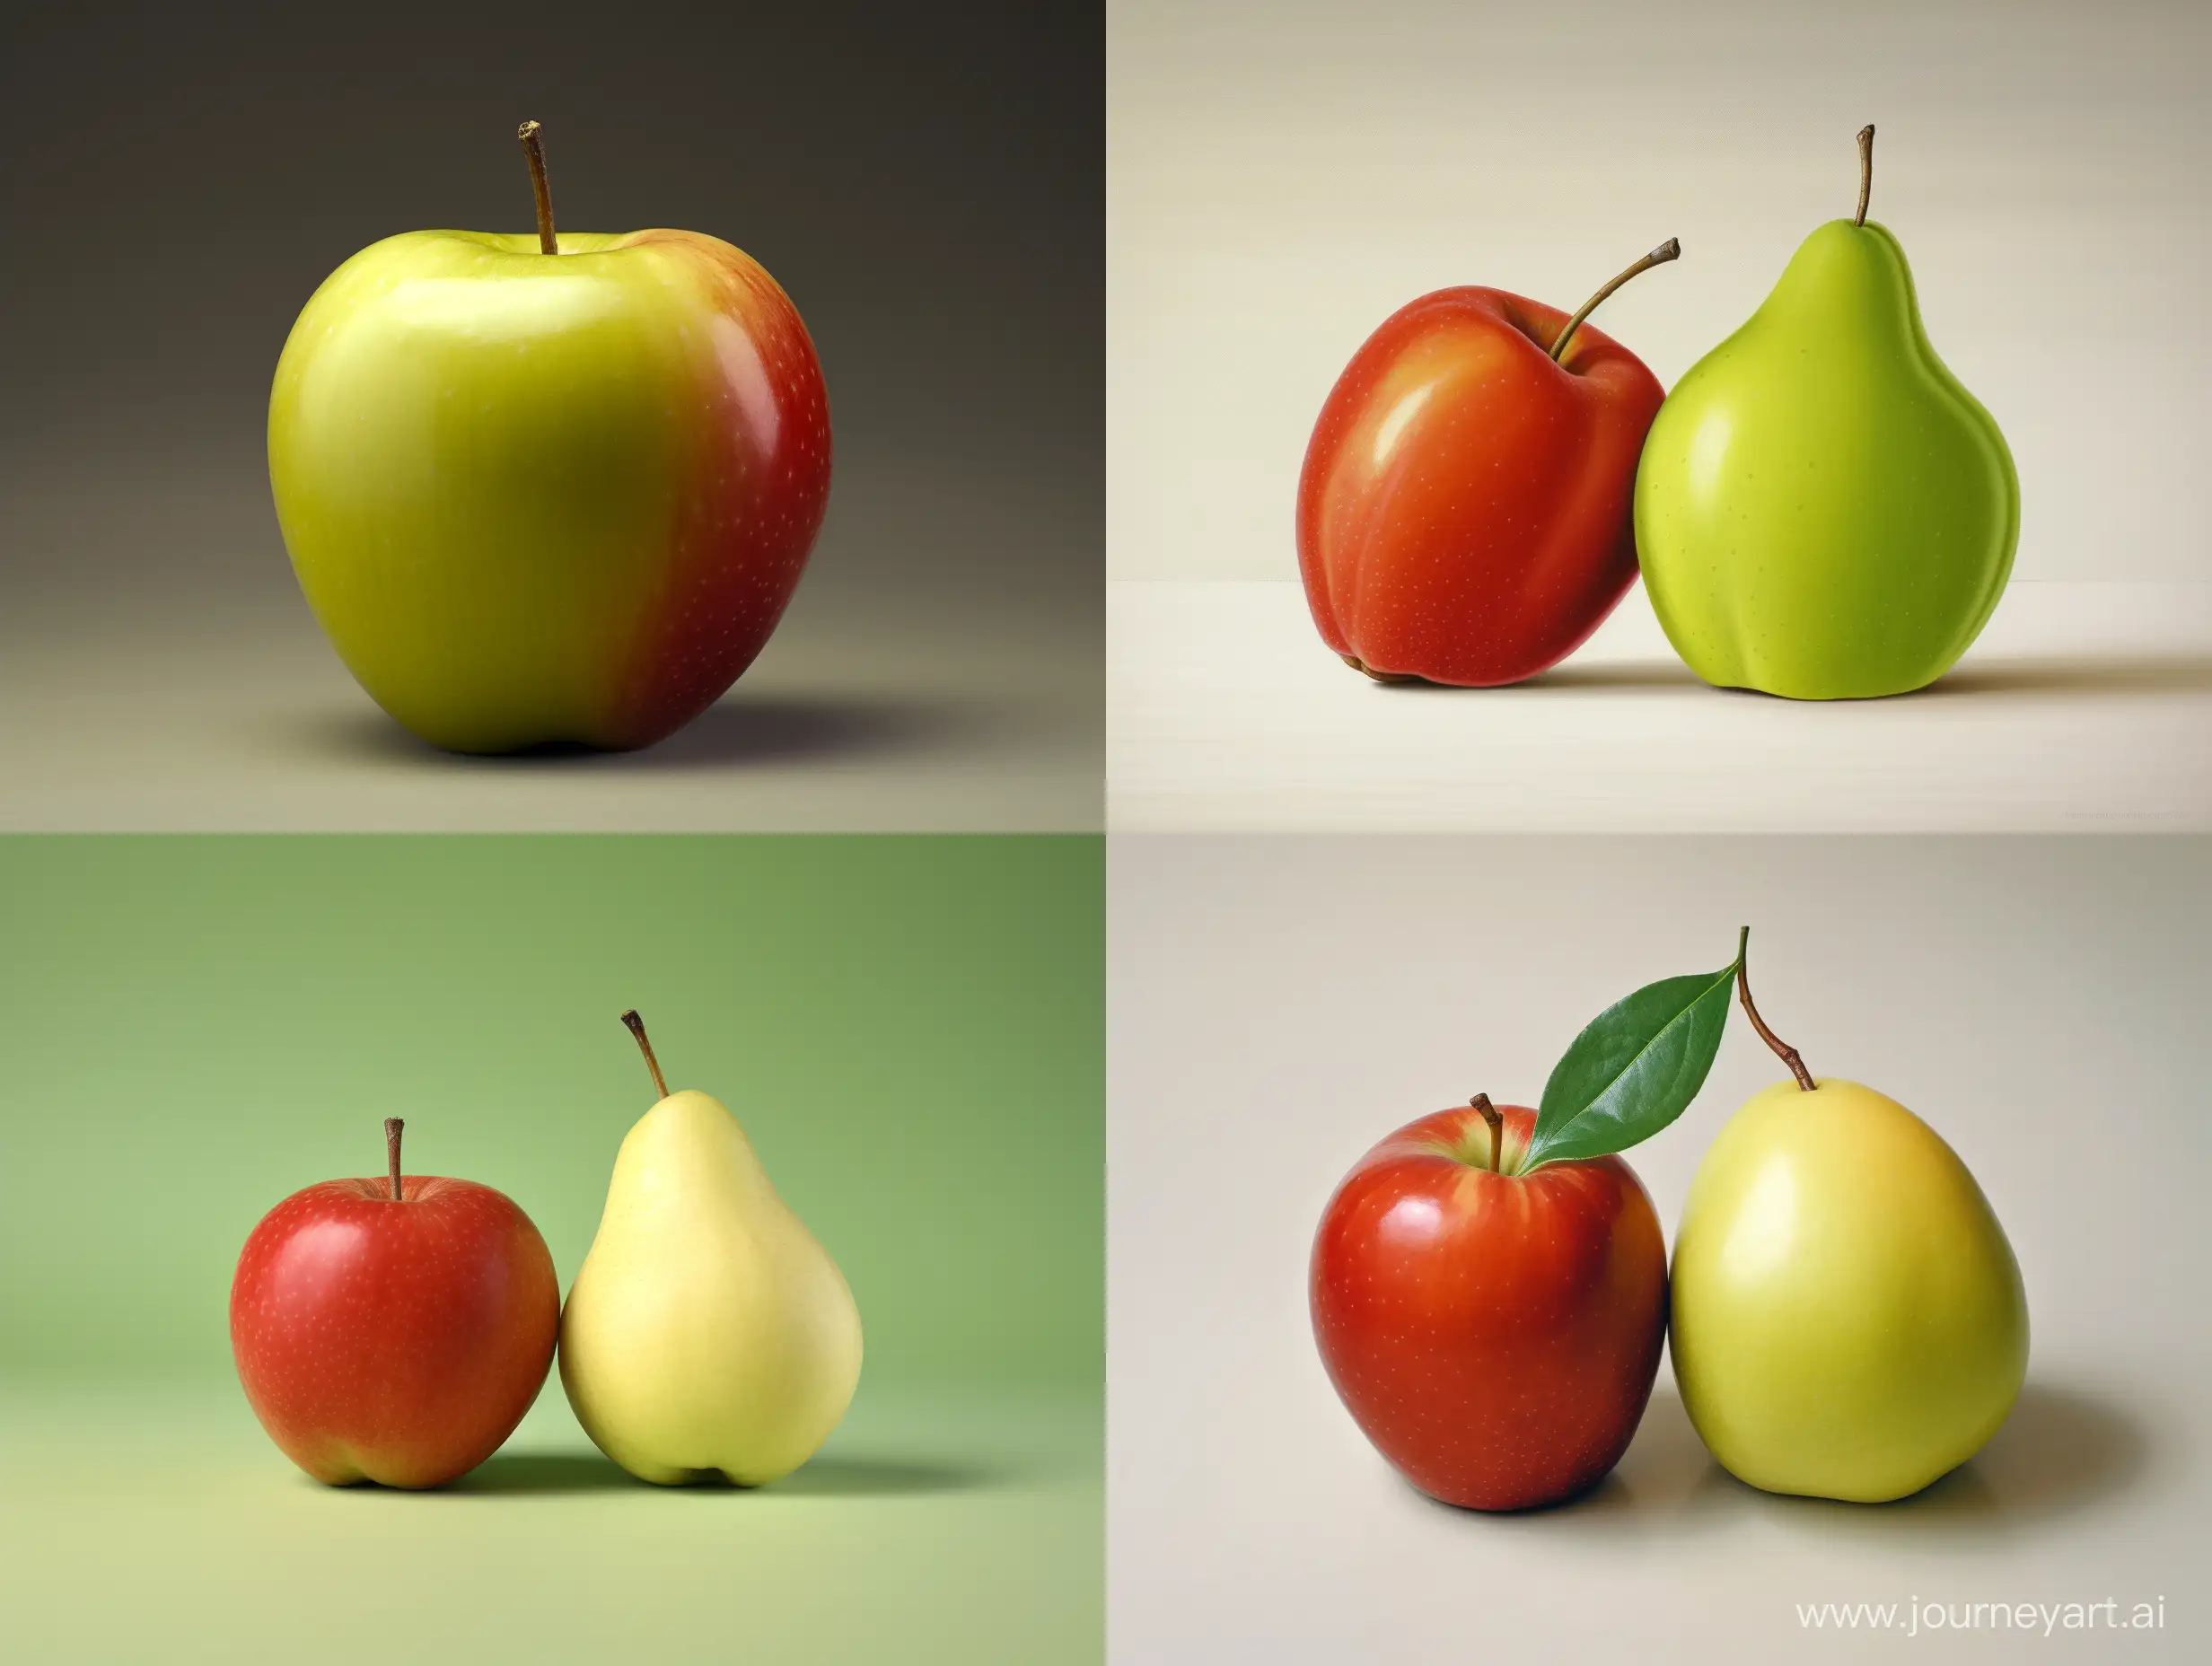 single fruit, half of it is an apple, half of it is a pear